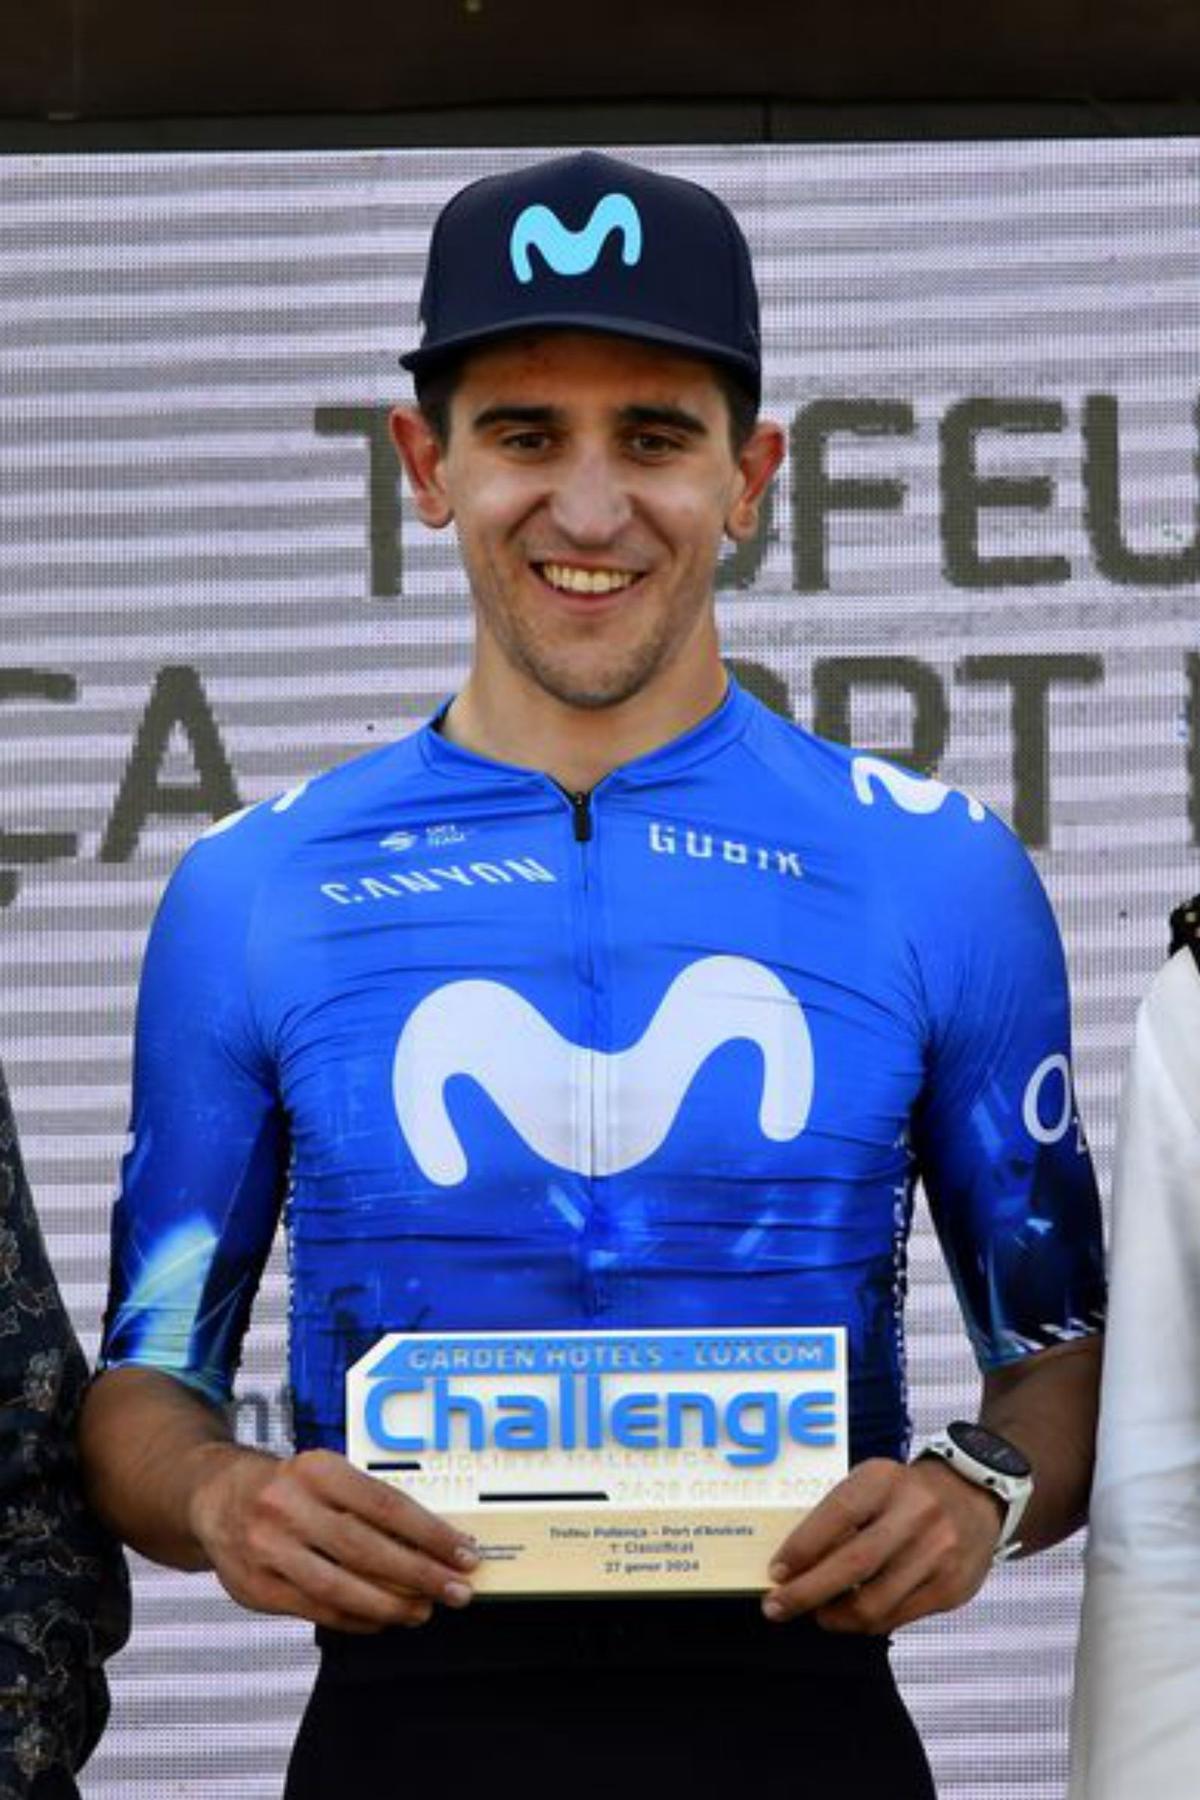 El asturiano Pelayo Sánchez gana al sprint en la Challenge de Mallorca